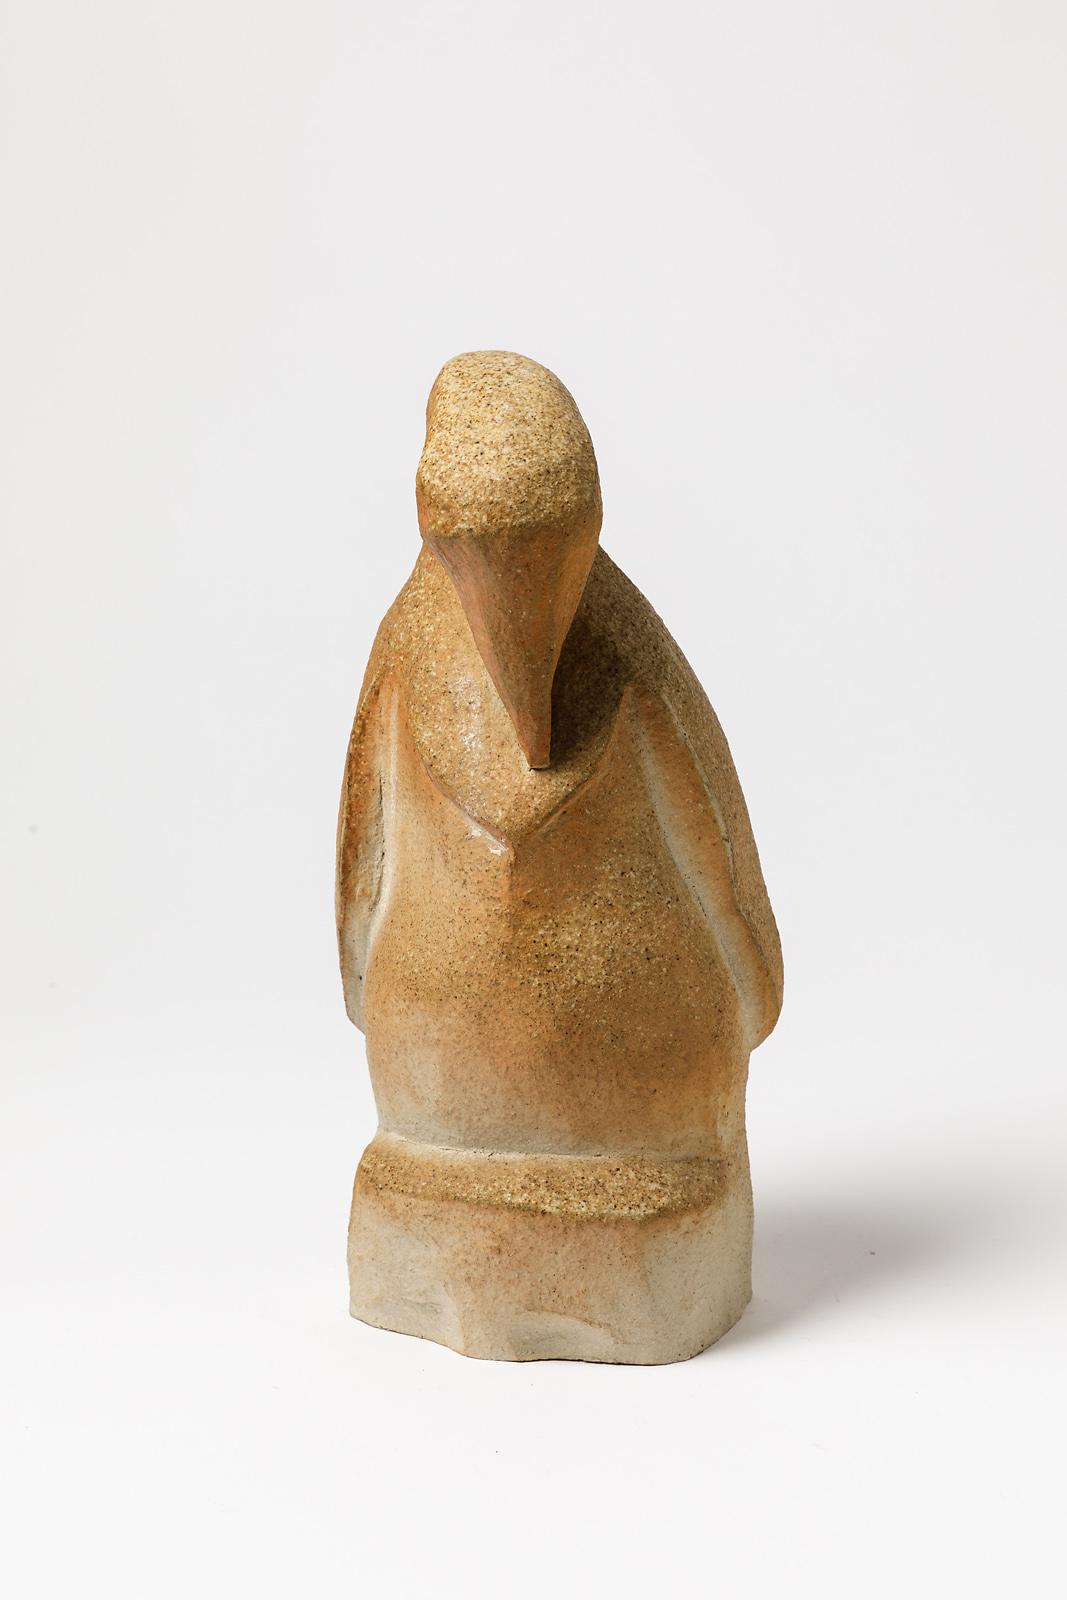 Annie Maume - La Borne

Original und einzigartiges Stück an der Basis unterzeichnet

Realisiert um 1970

Große braune Steingut Keramik Skulptur Pinguin Form

Originaler, einwandfreier Zustand

Maße: Höhe 24 cm Groß 11 cm.